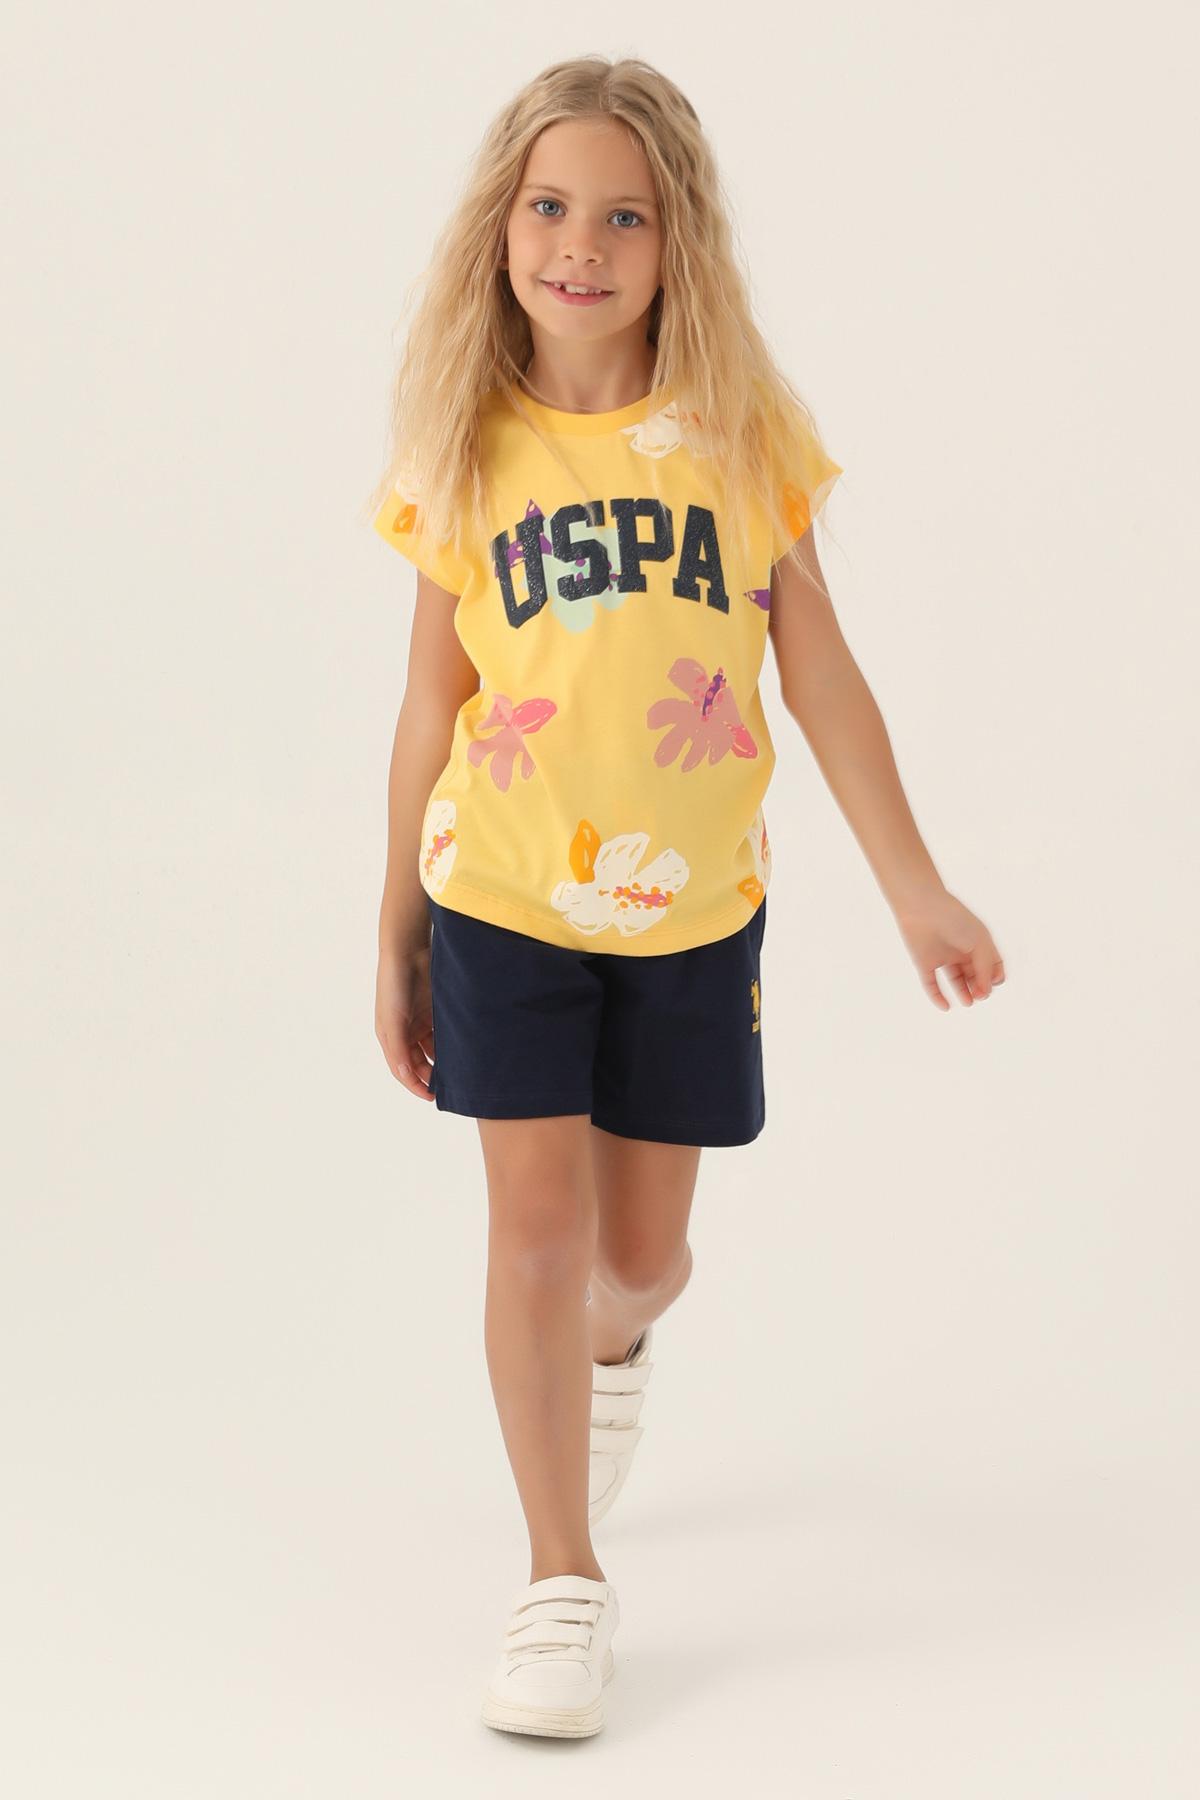 Selected image for U.S. Polo Assn. Komplet za devojčice US1843-G, Žuti